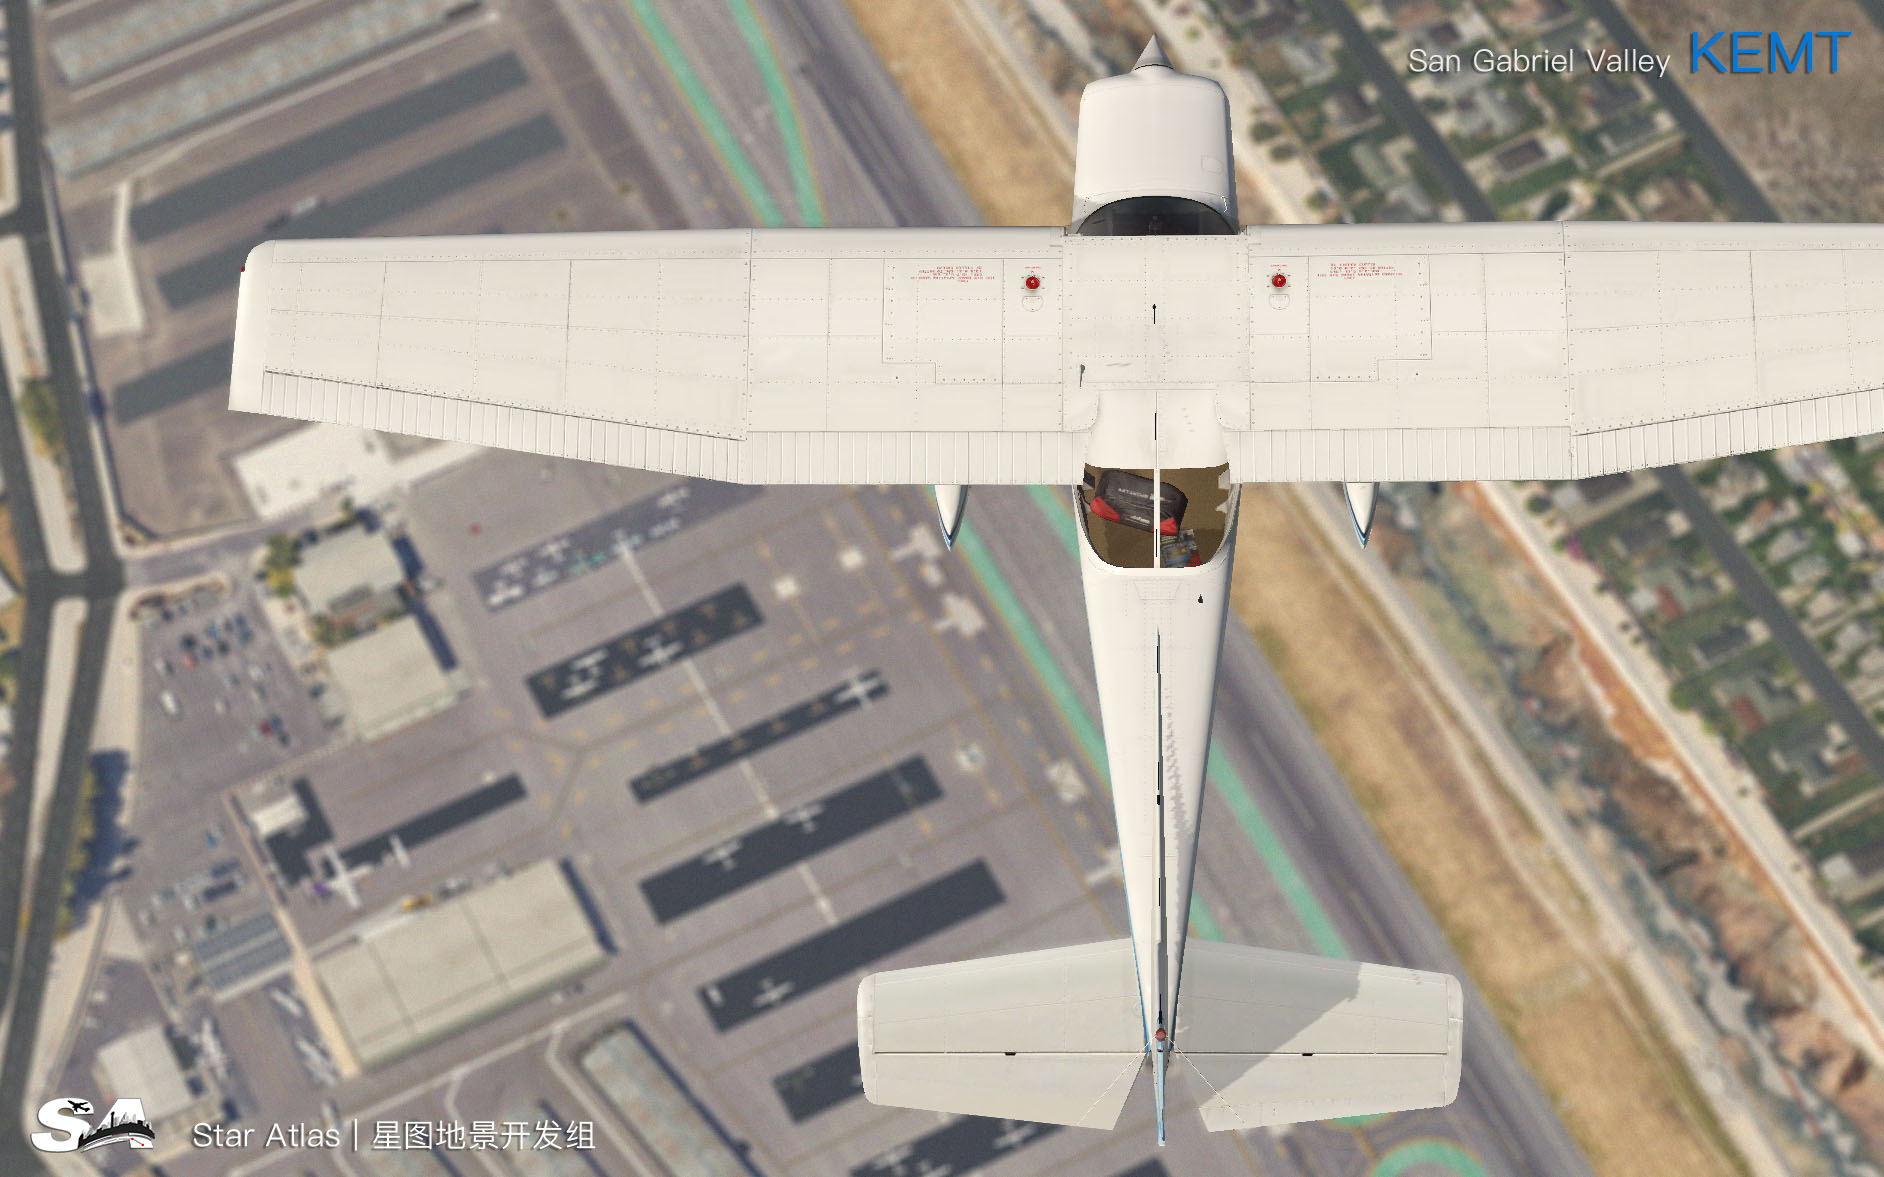 【X-Plane】KEMT-圣盖博谷机场 HD 1.0-5060 